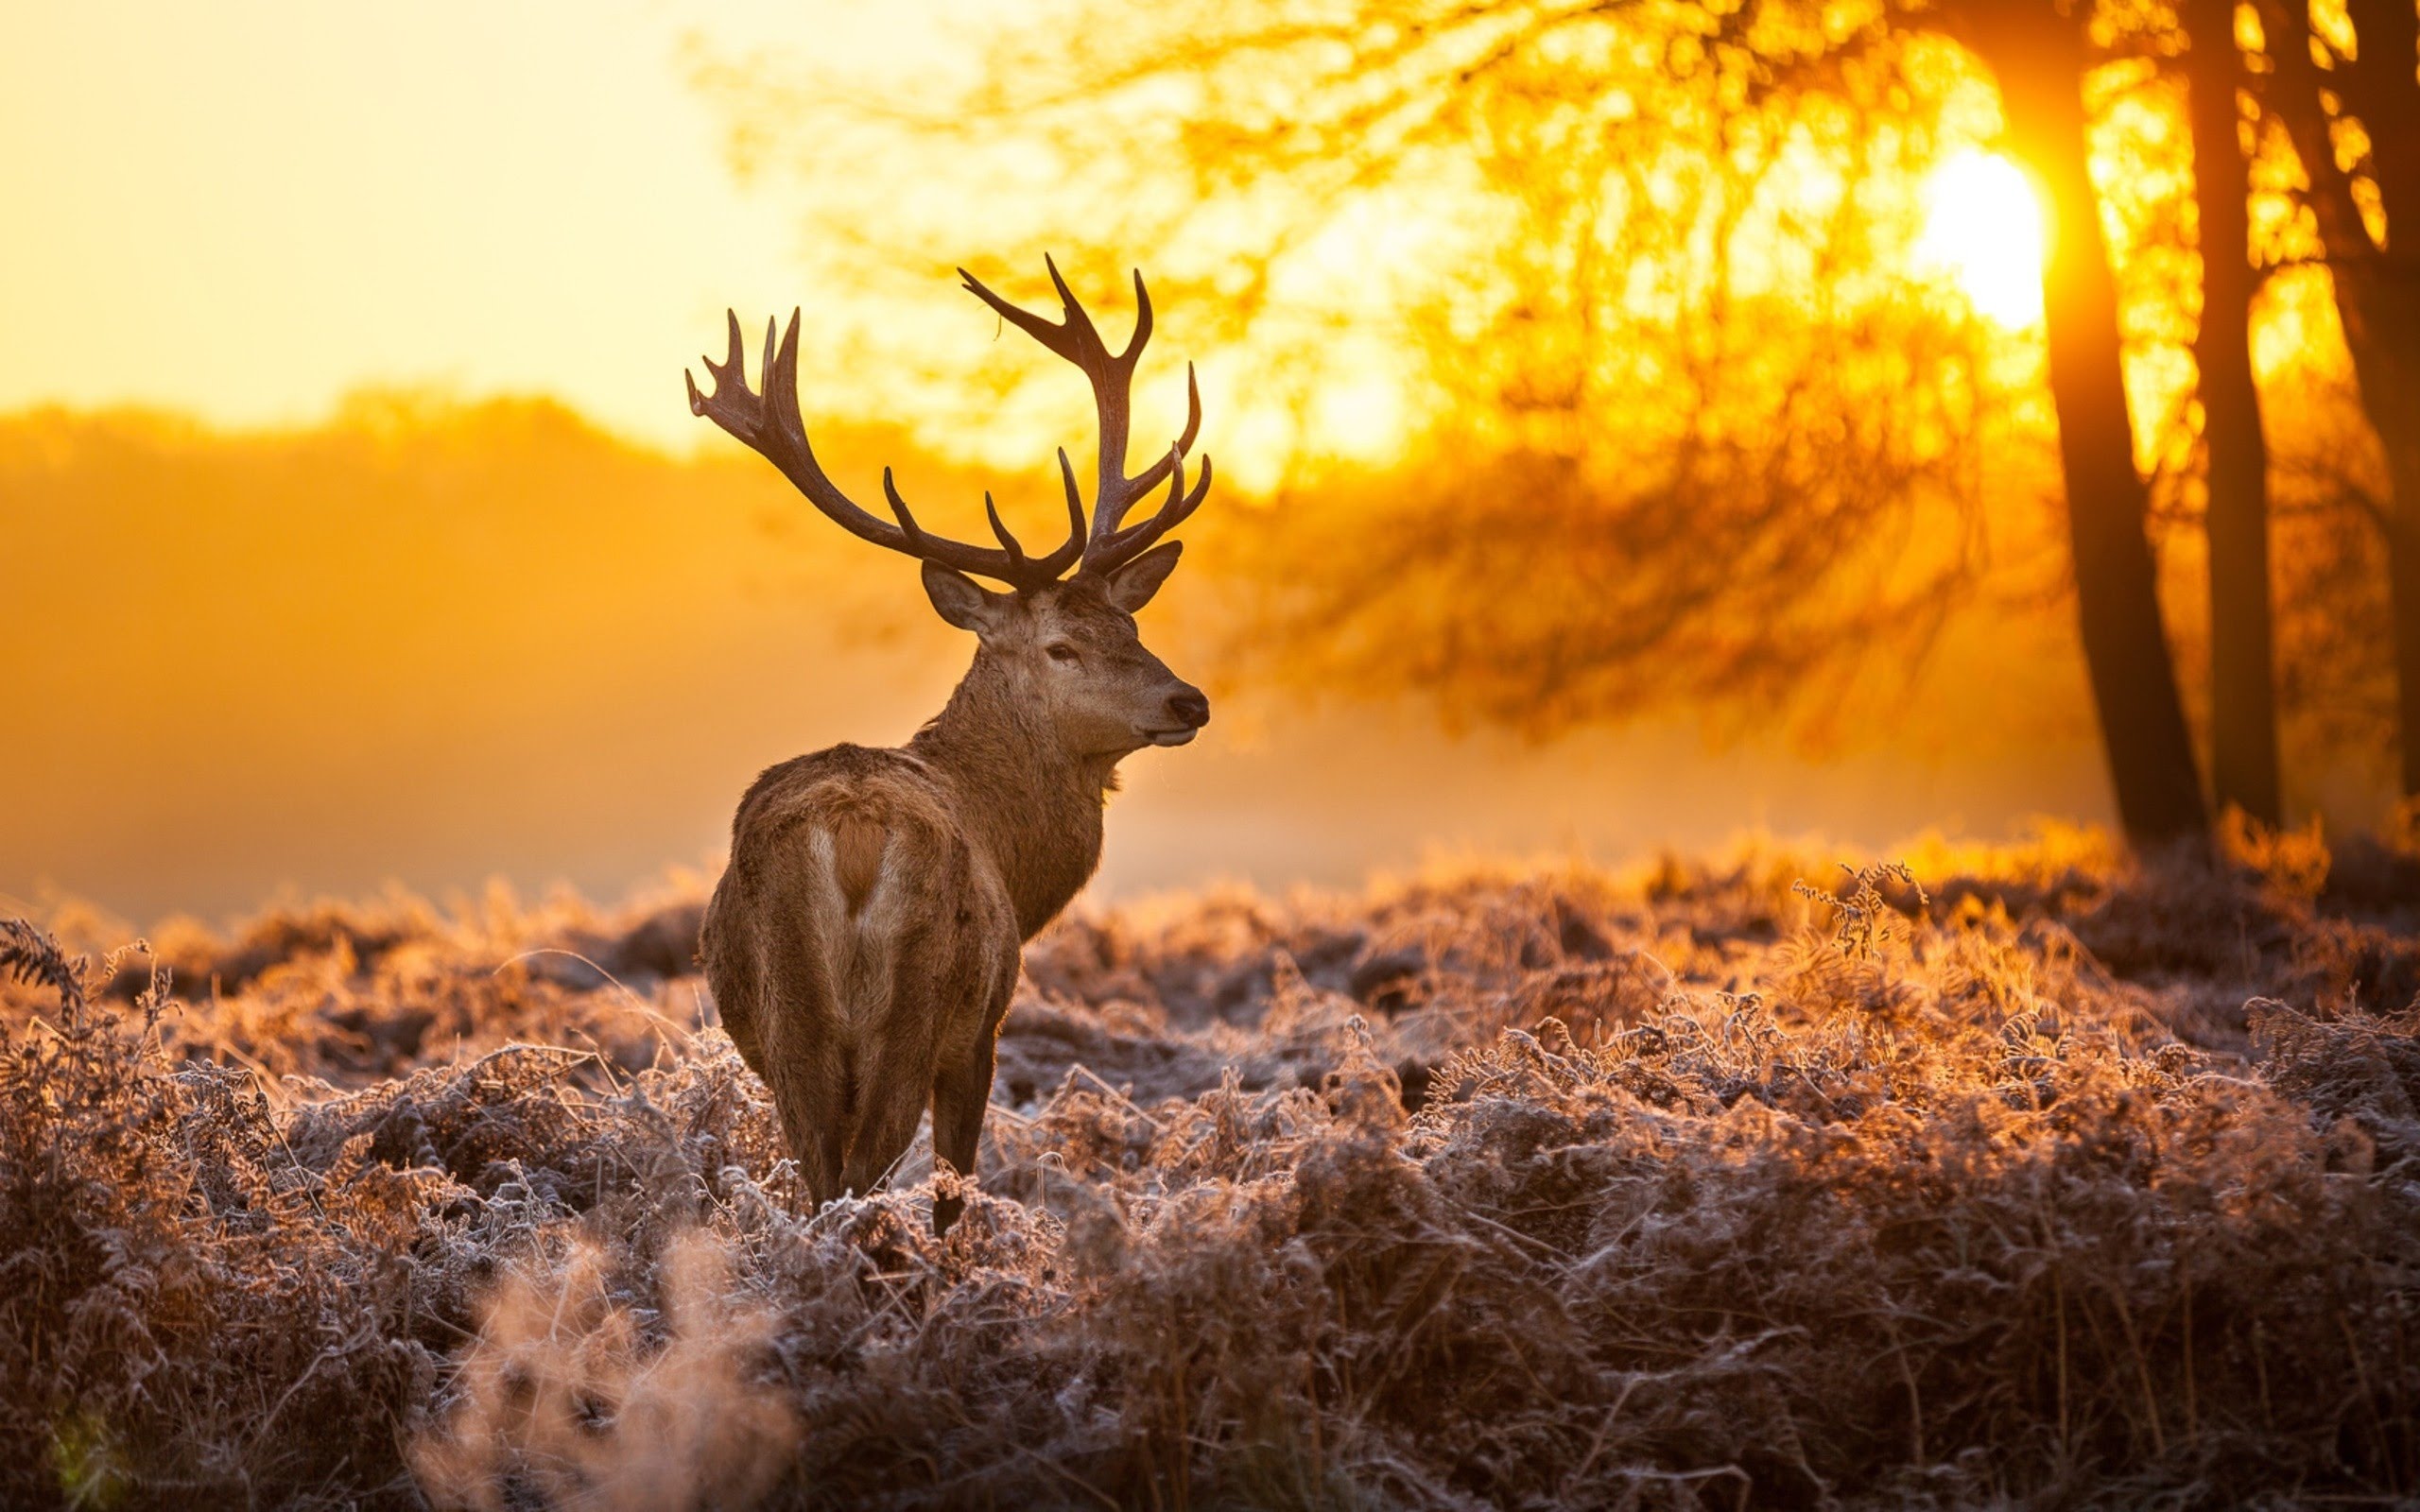 Deer-hunting season